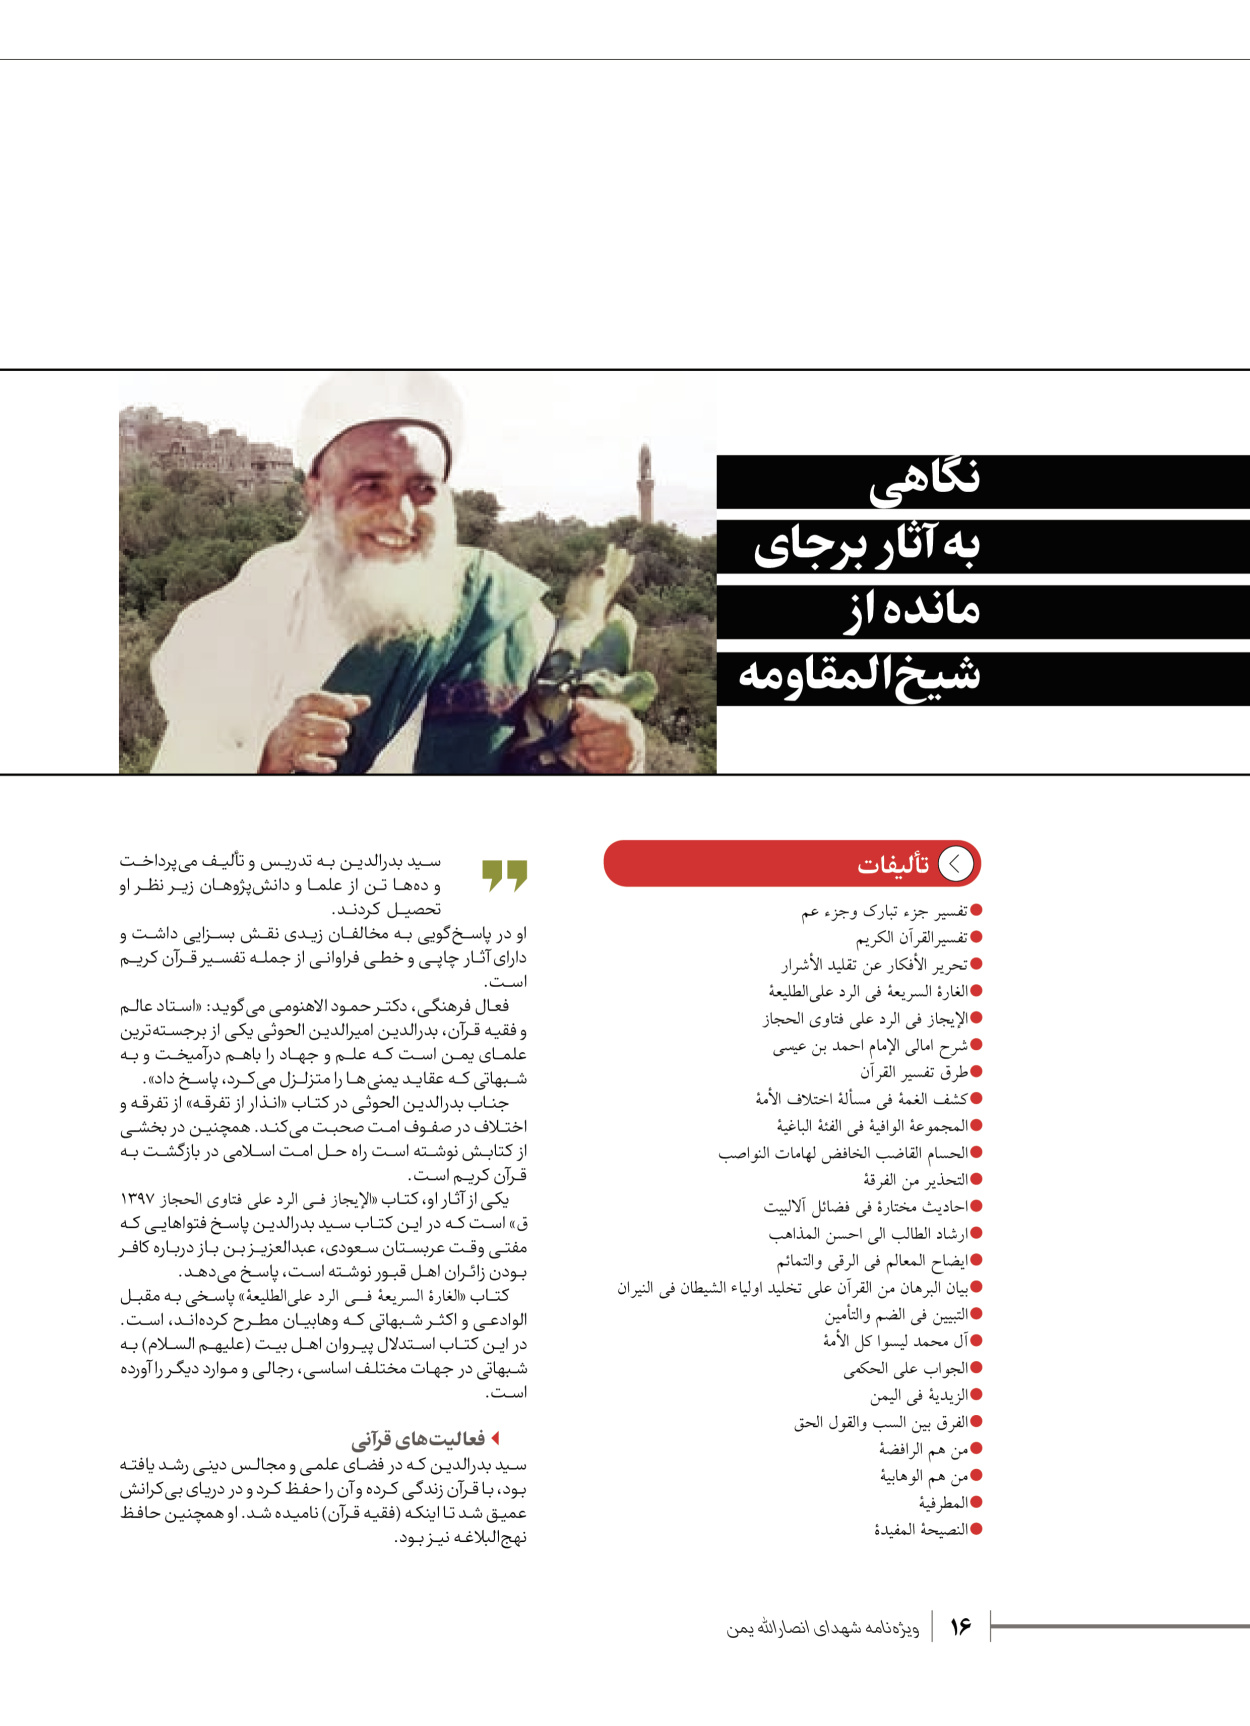 روزنامه ایران - ویژه نامه شهدای قدس ۴ - ۰۱ اسفند ۱۴۰۲ - صفحه ۱۶